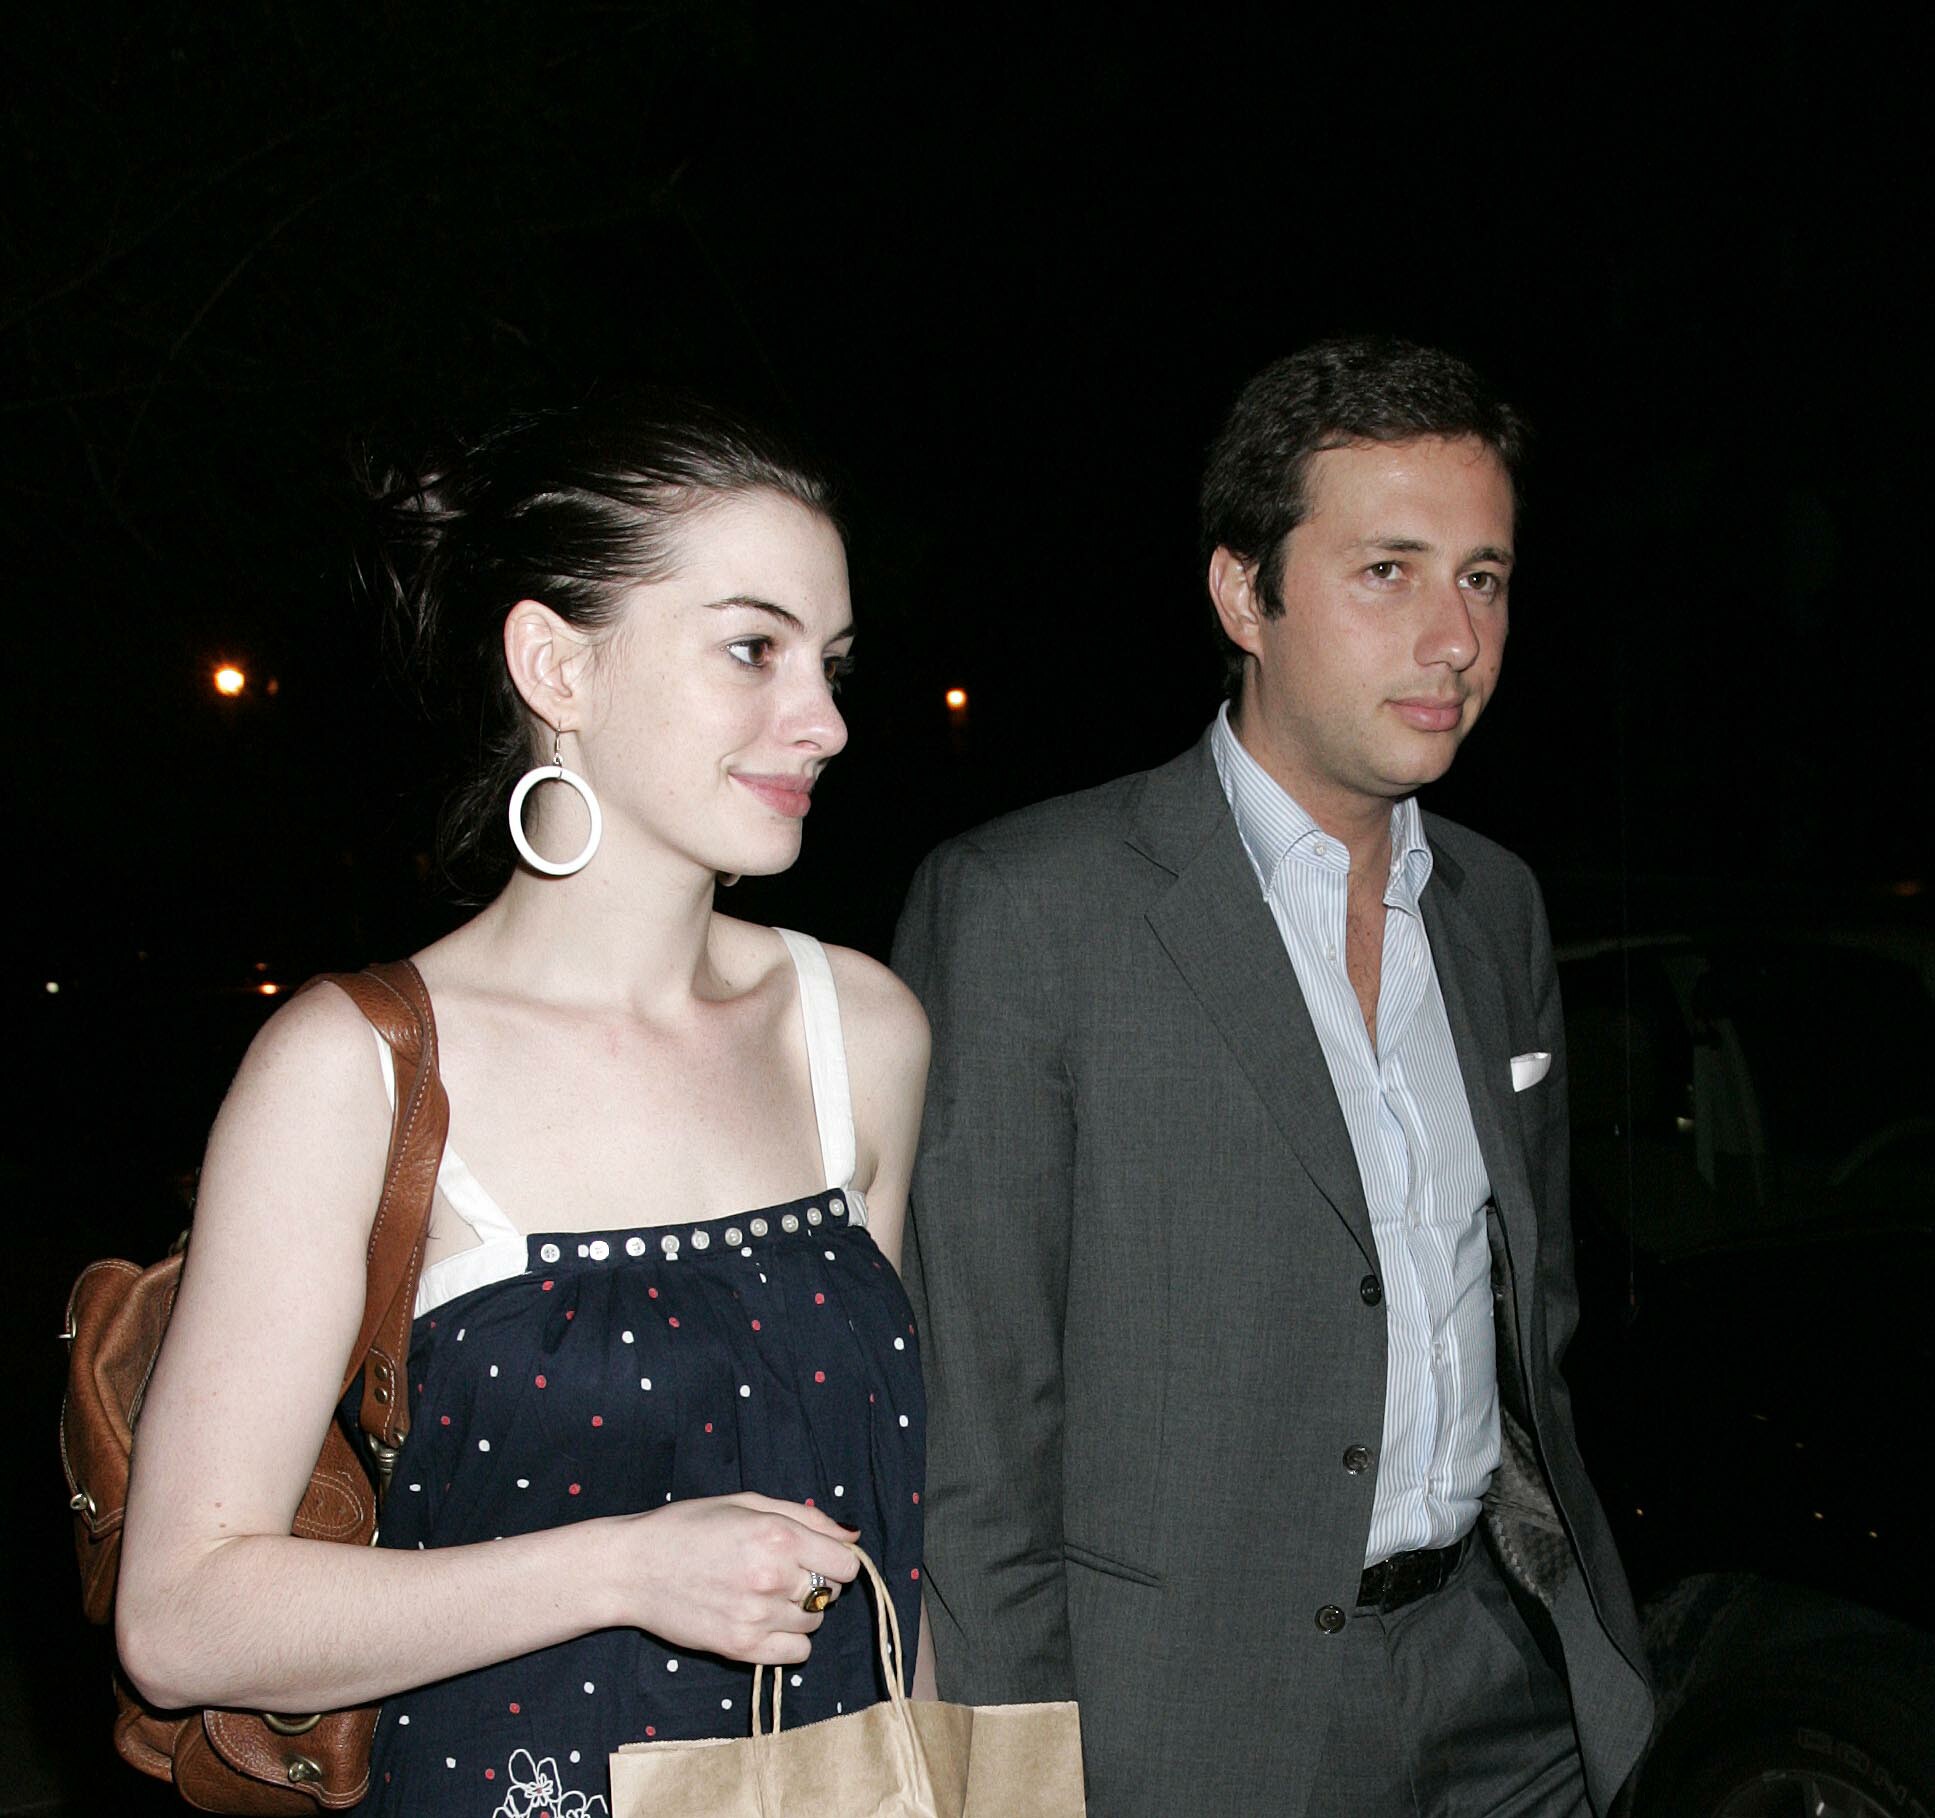 Anne Hathaway and boyfriend leave a lower Manhatten restaurant-7